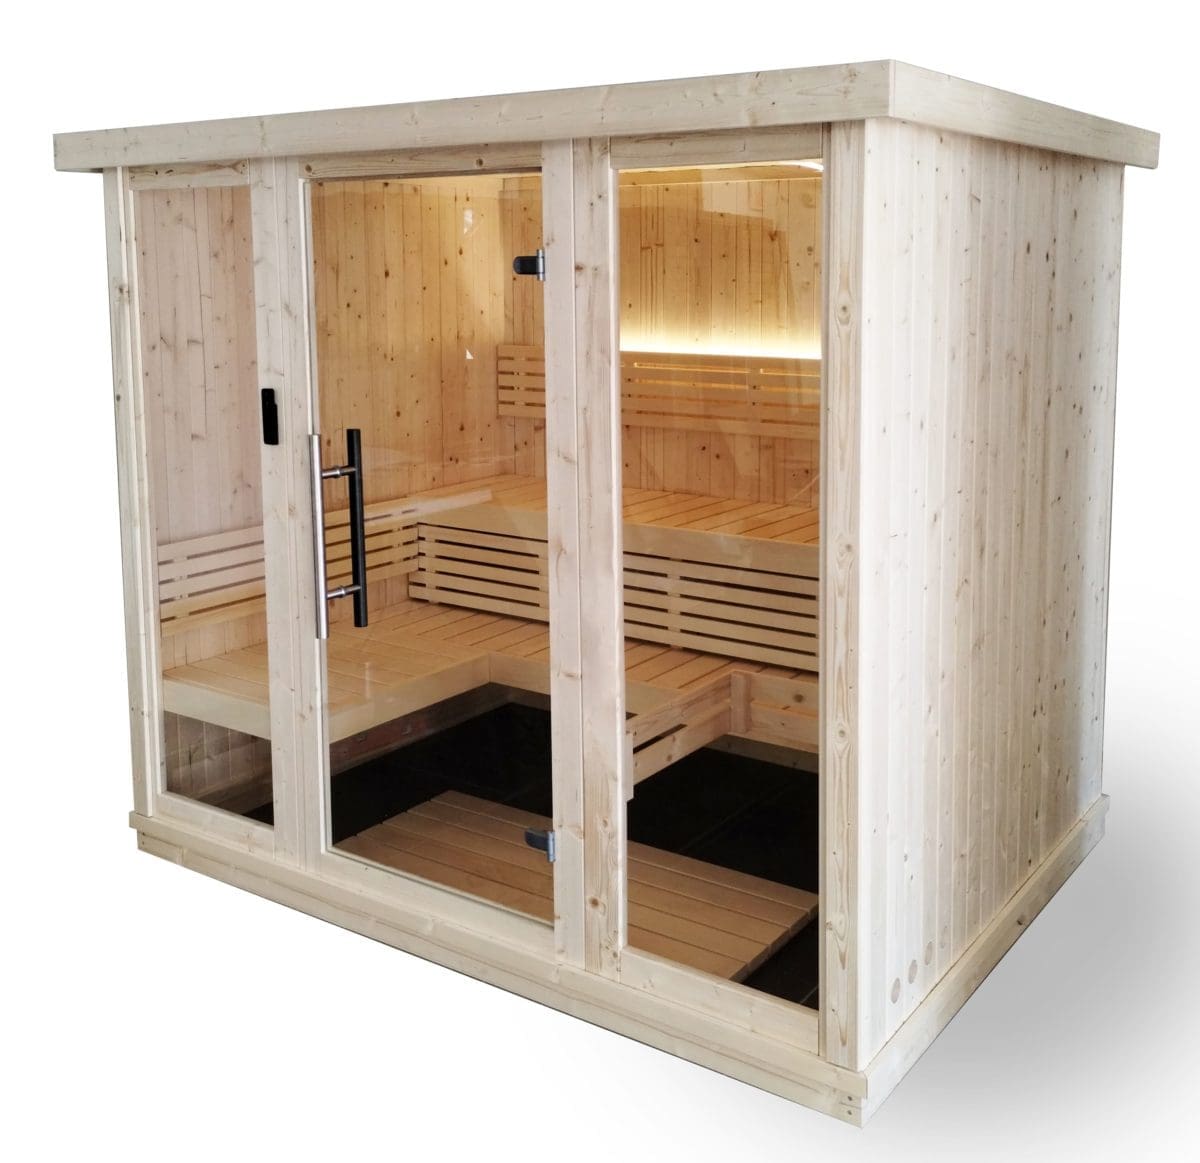 Front view of the SaunaLife Model X7 Indoor Sauna